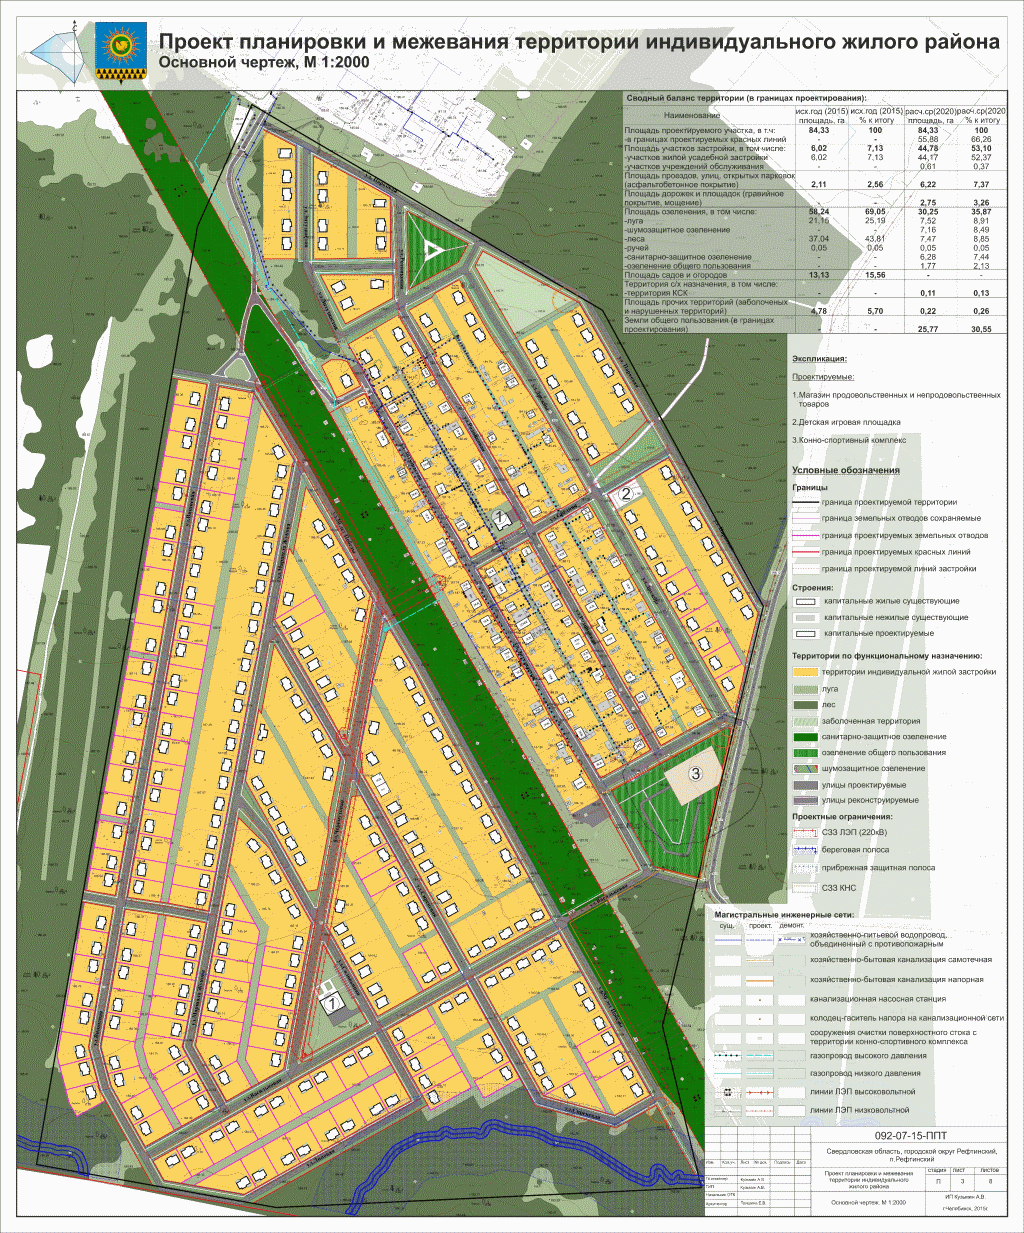 Карта проекта планировки территории индивидуального жилого района